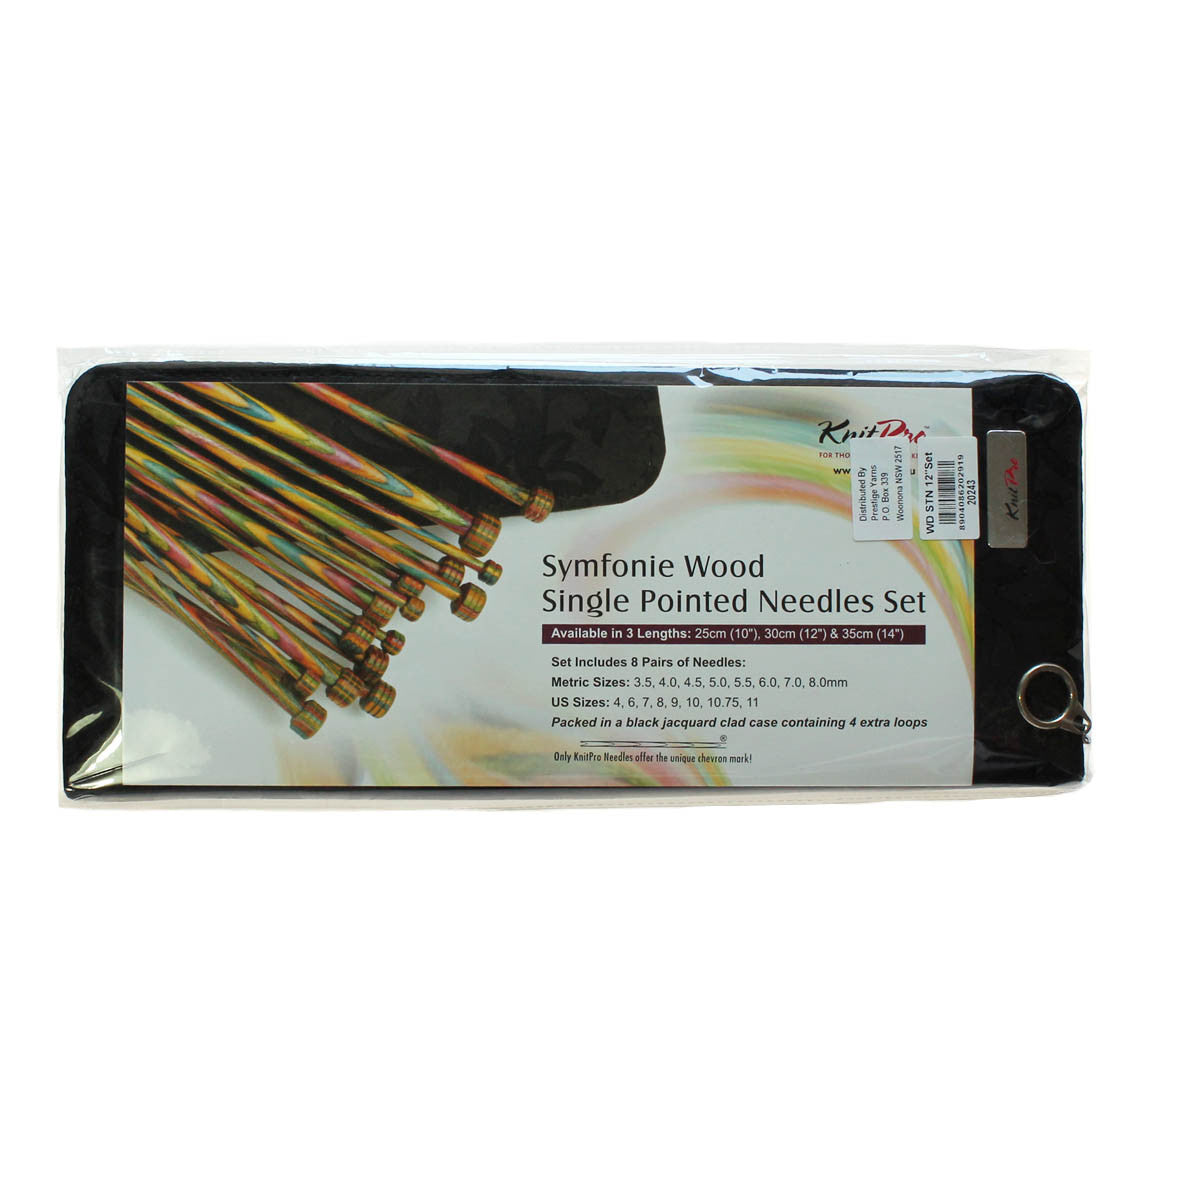 KnitPro 20243 SYMFONIE WOOD Single Pointed Needles 30cm Set of 8 Pairs + Case